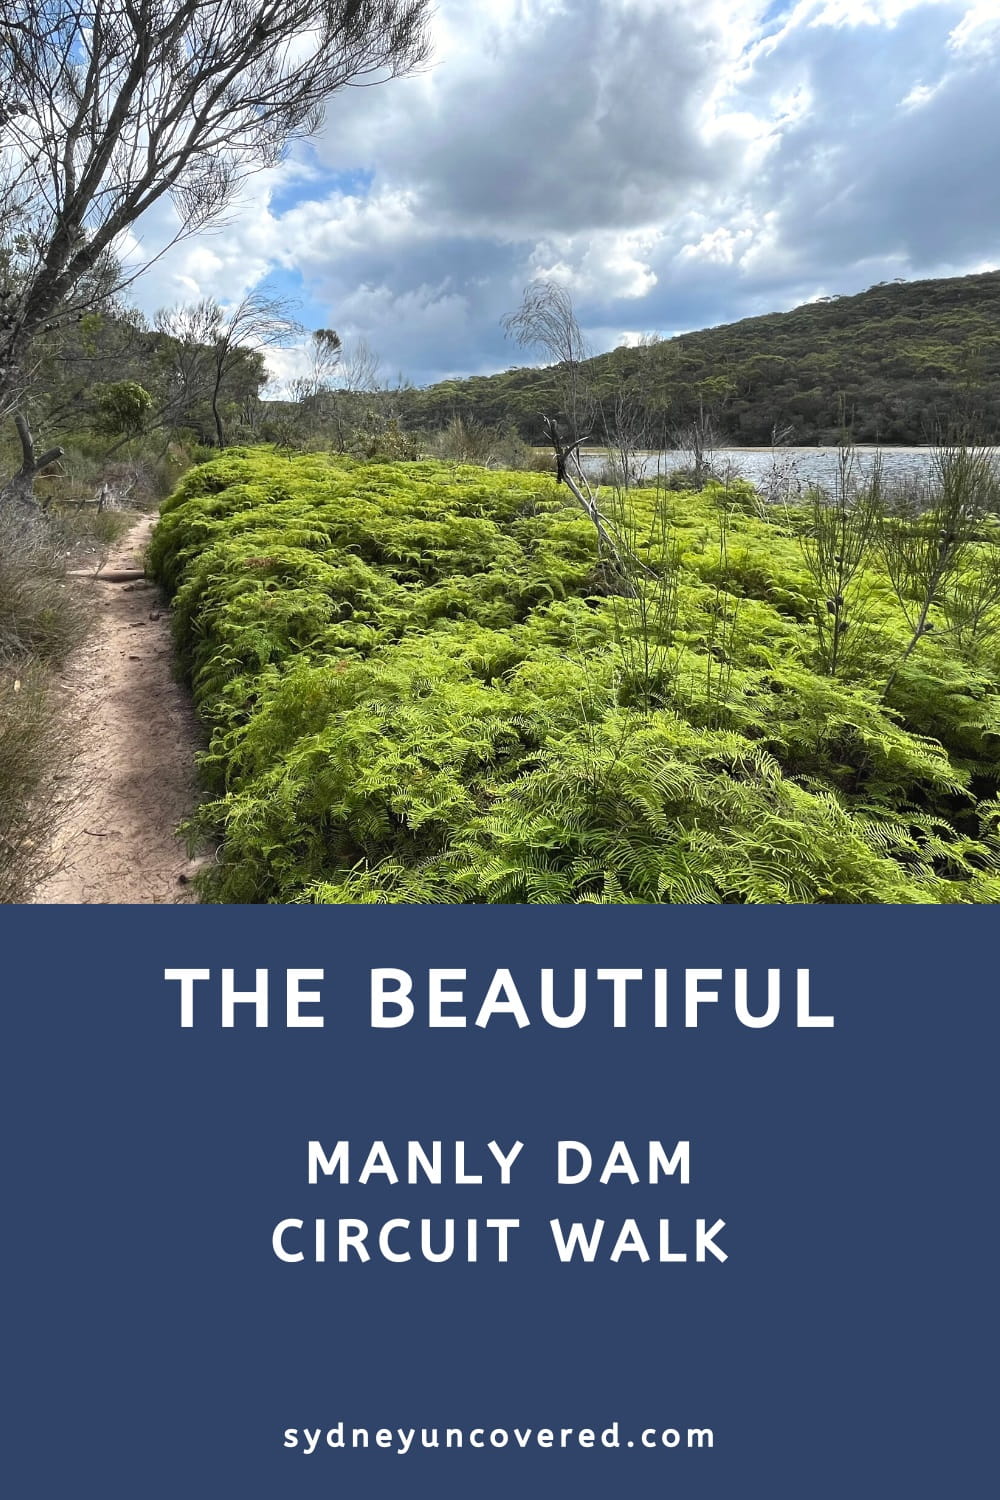 Manly Dam Circuit Walk